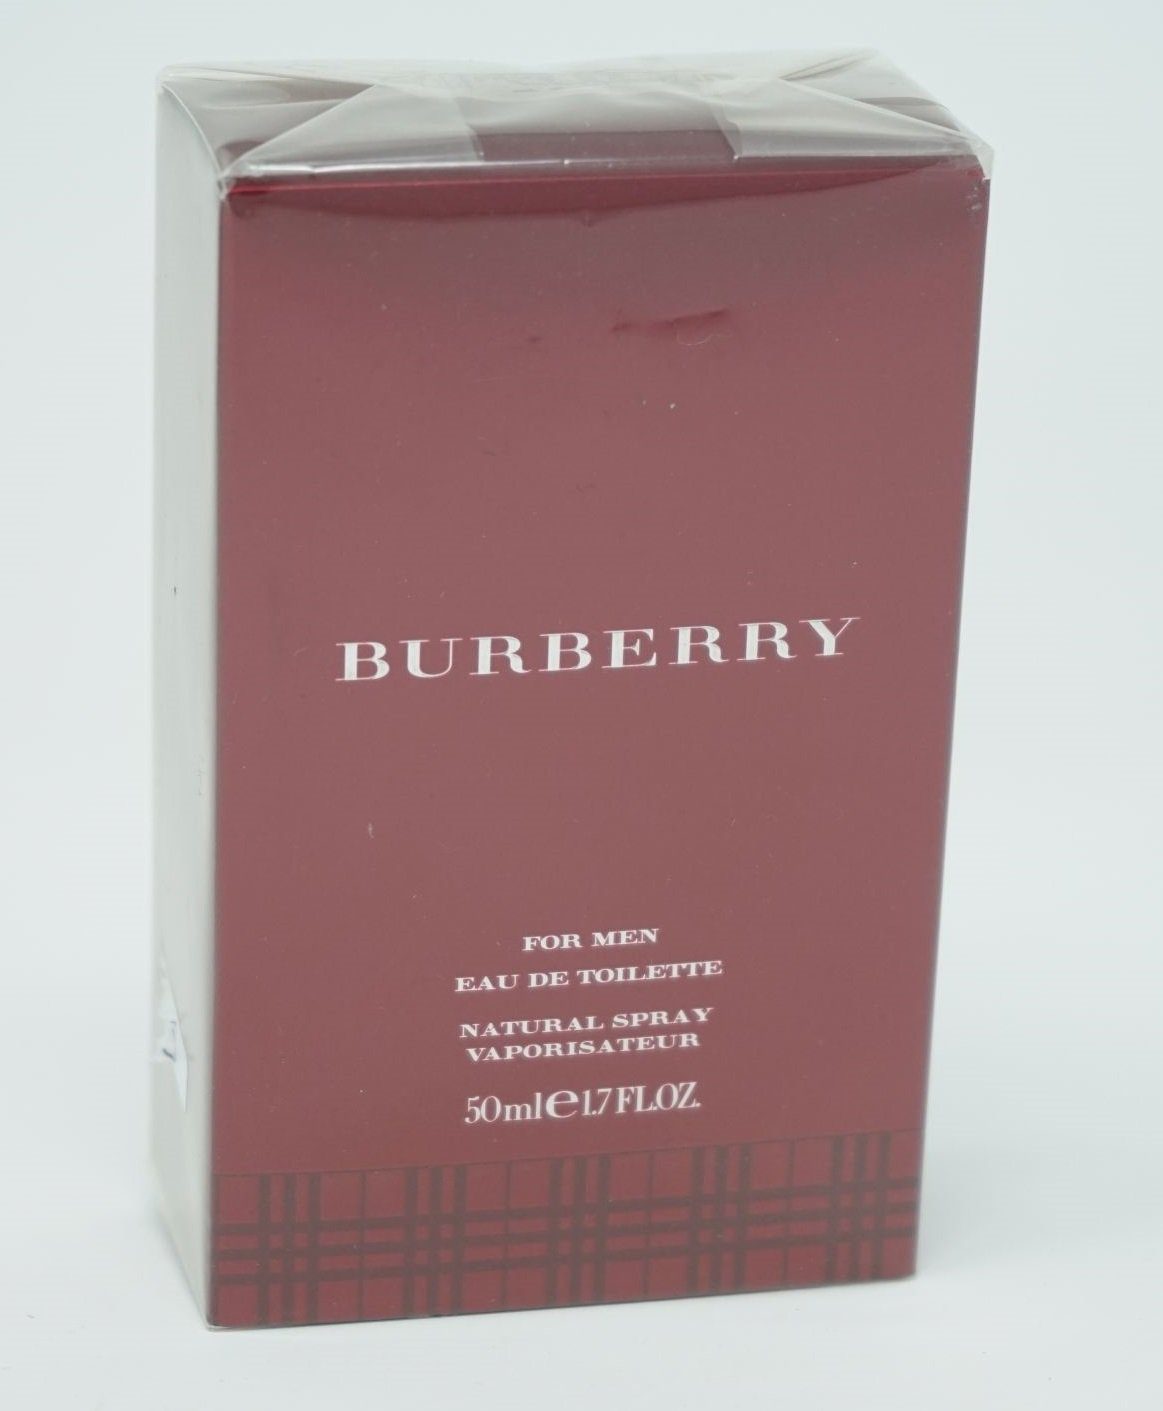 BURBERRY Eau Vapo For Toilette Toilette Eau de de 50ml Burberry Spray Men